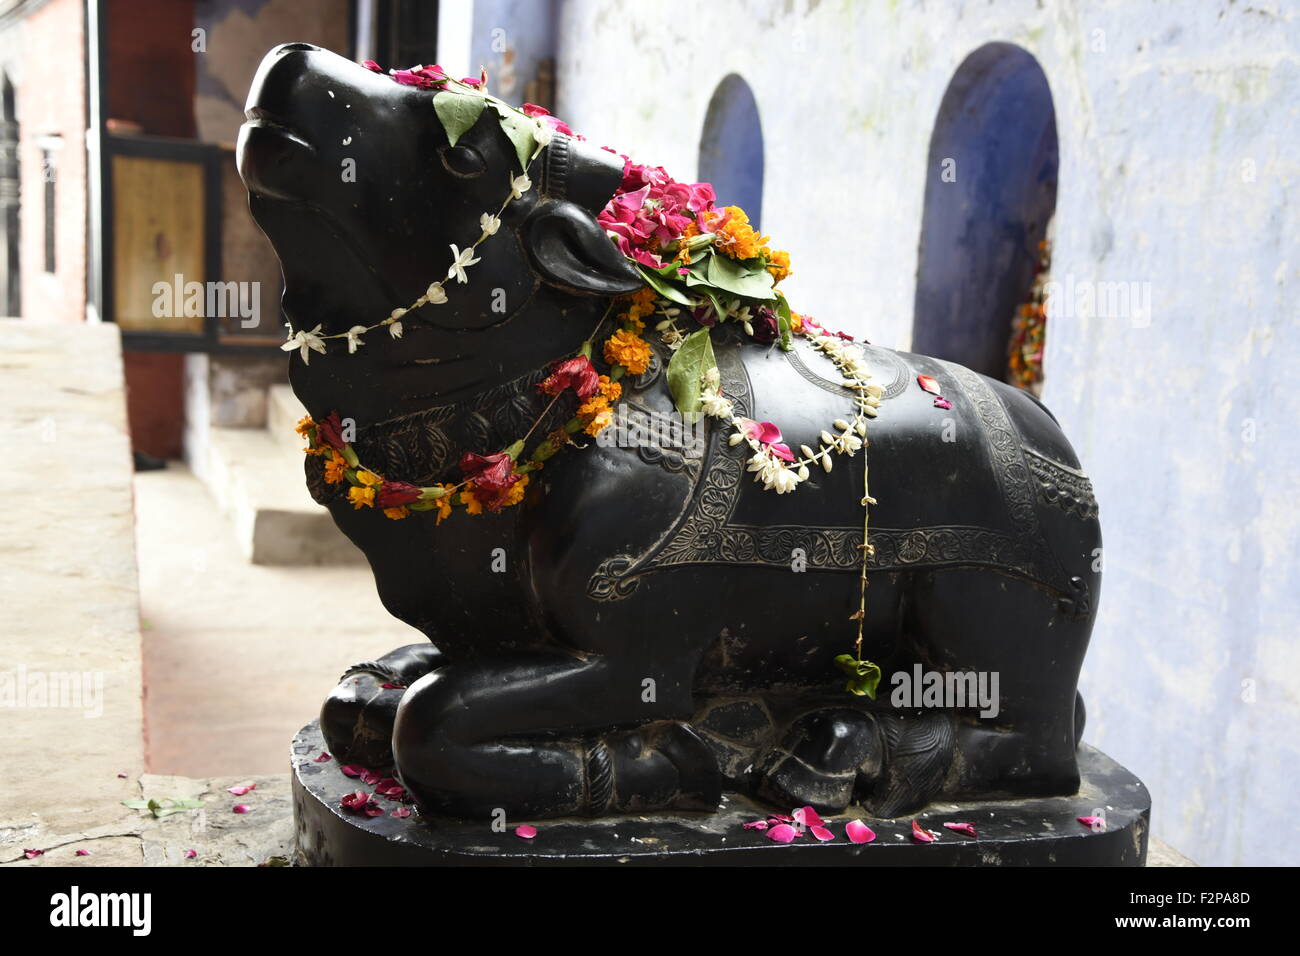 Shiva oder hinduistische Heilige Nandi volle Seite Gesicht schwarz mit Blume Varanasi Uttar Pradesh Indien Asien oder der Heilige Stier Stockfoto